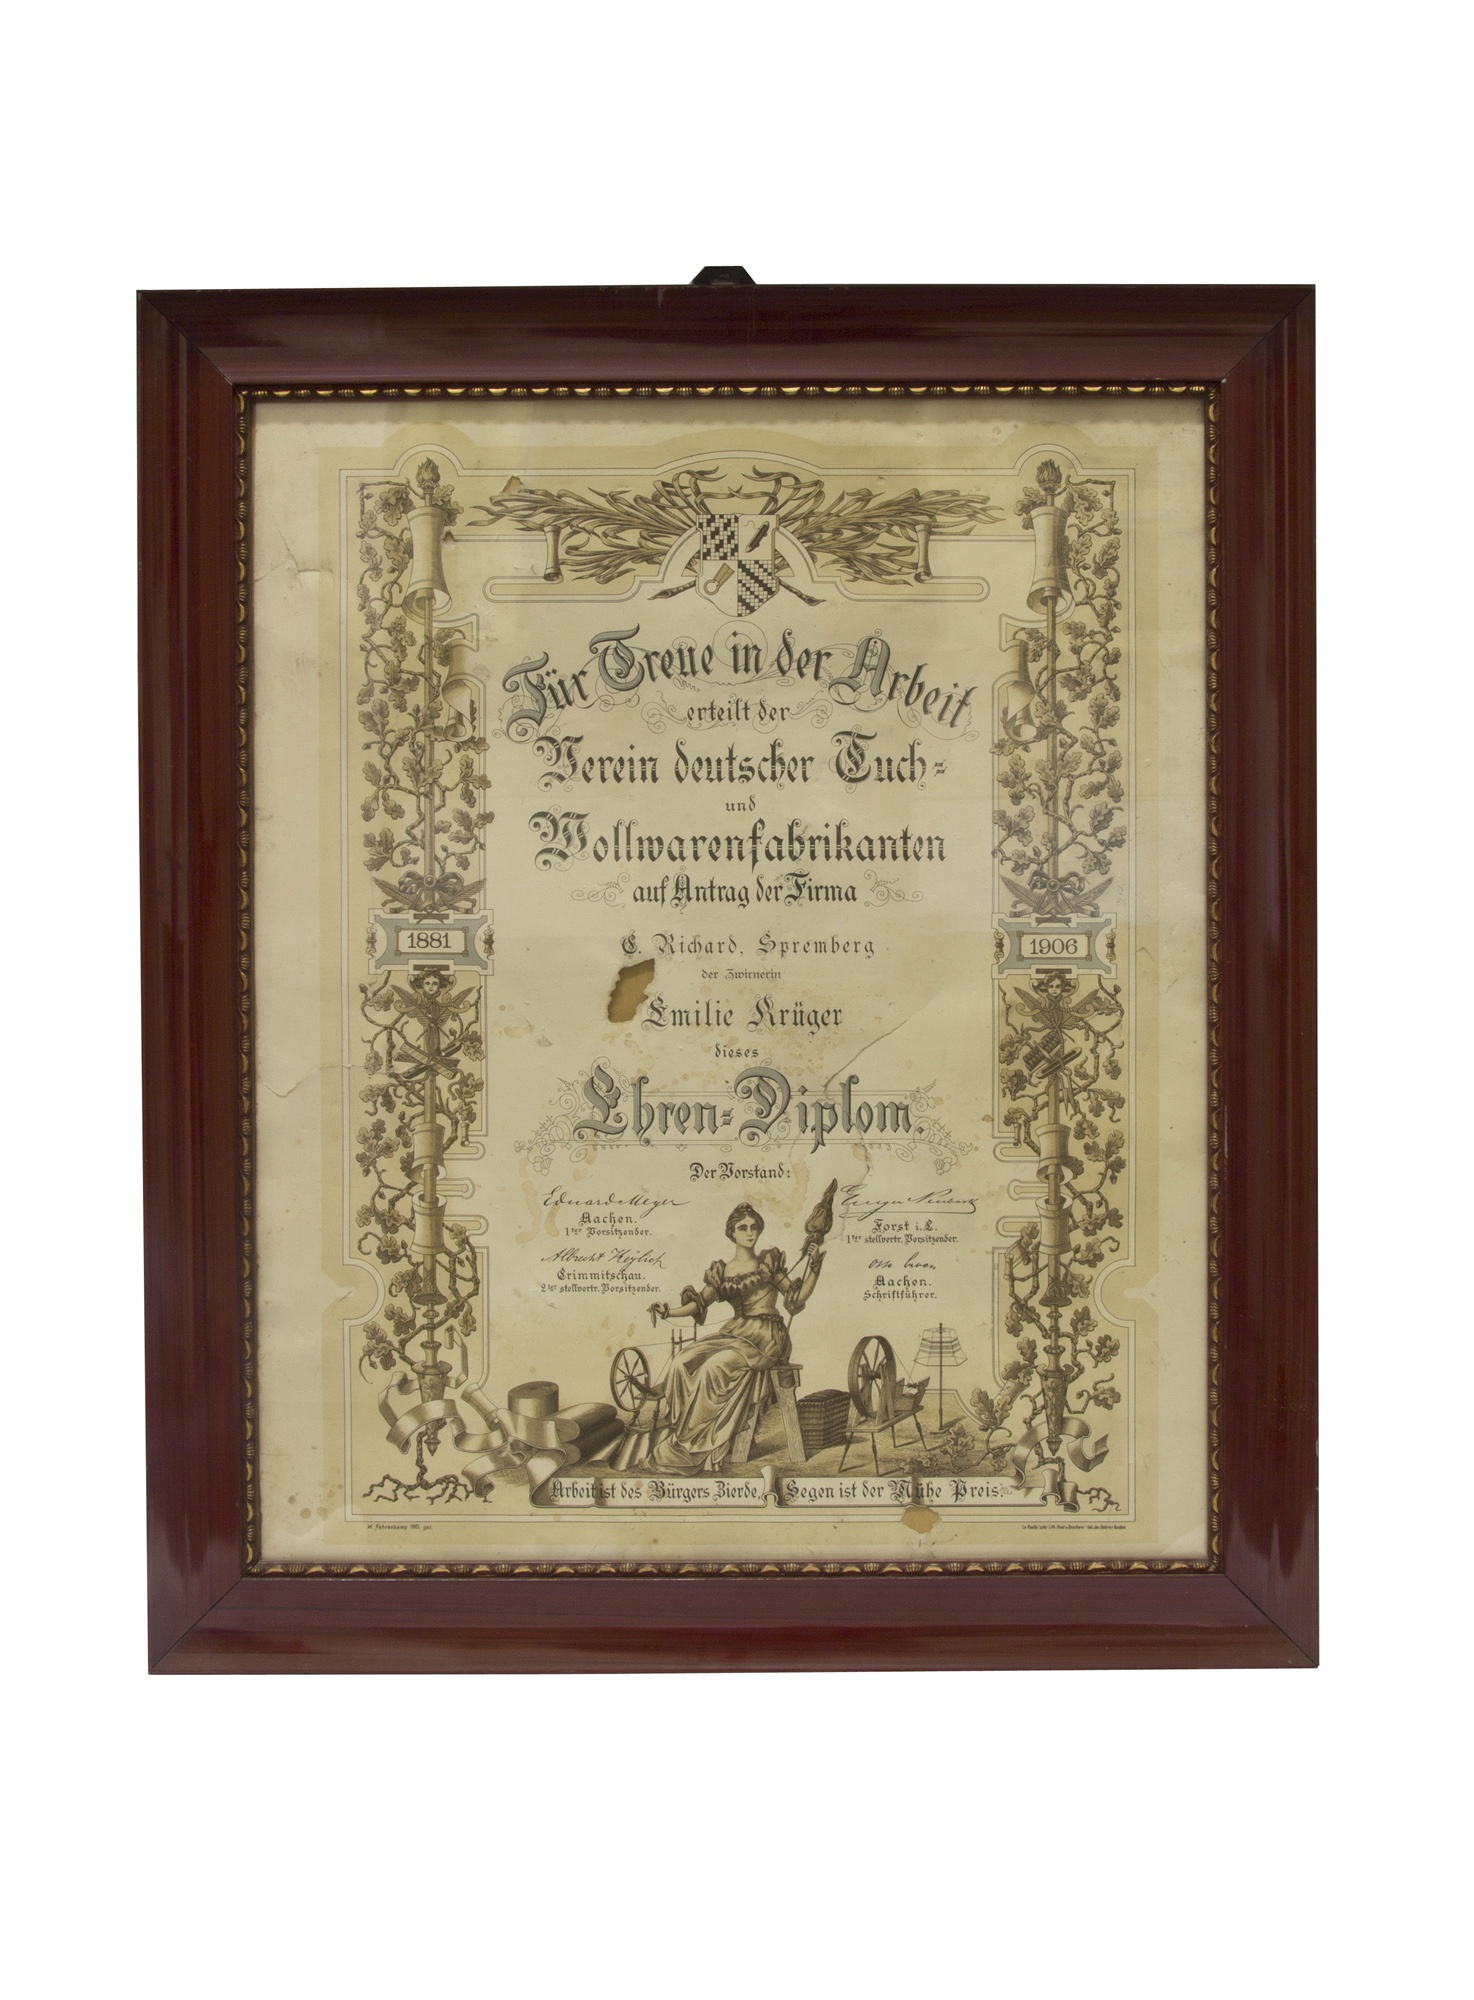 Treue-Diplom (Niederlausitzer Heidemuseum CC BY-NC-SA)